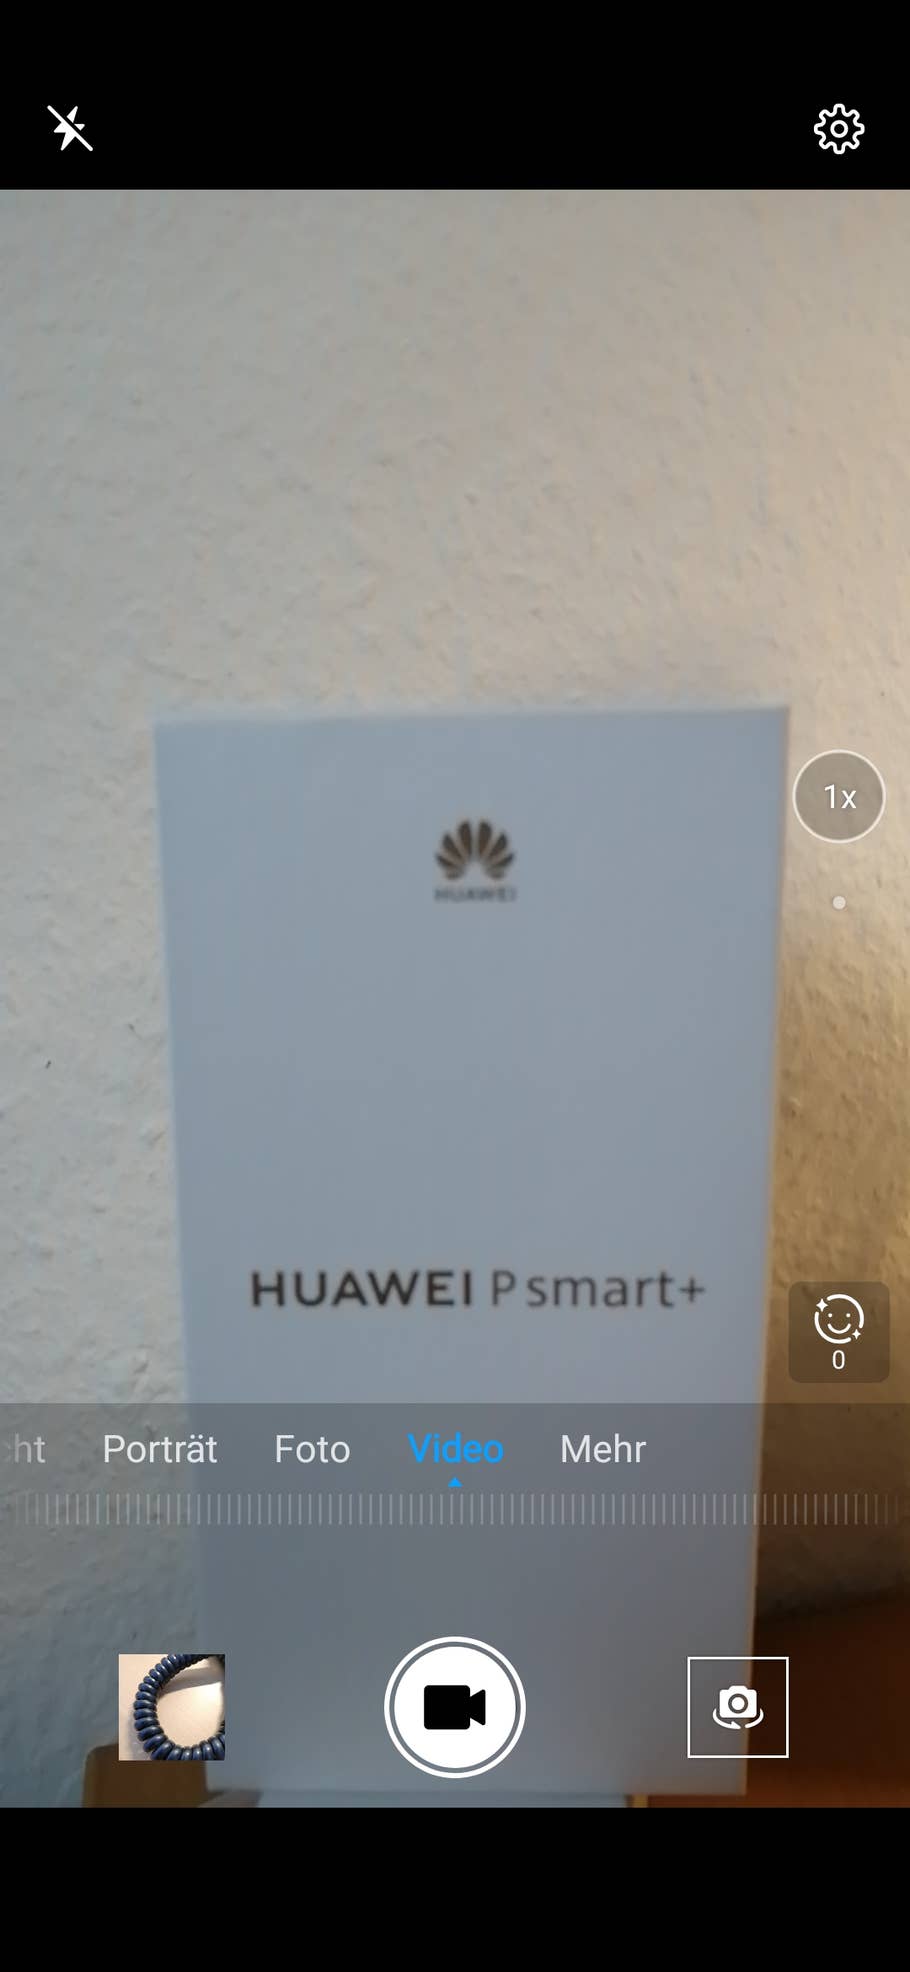 Huawei P smart+ 2019 Video